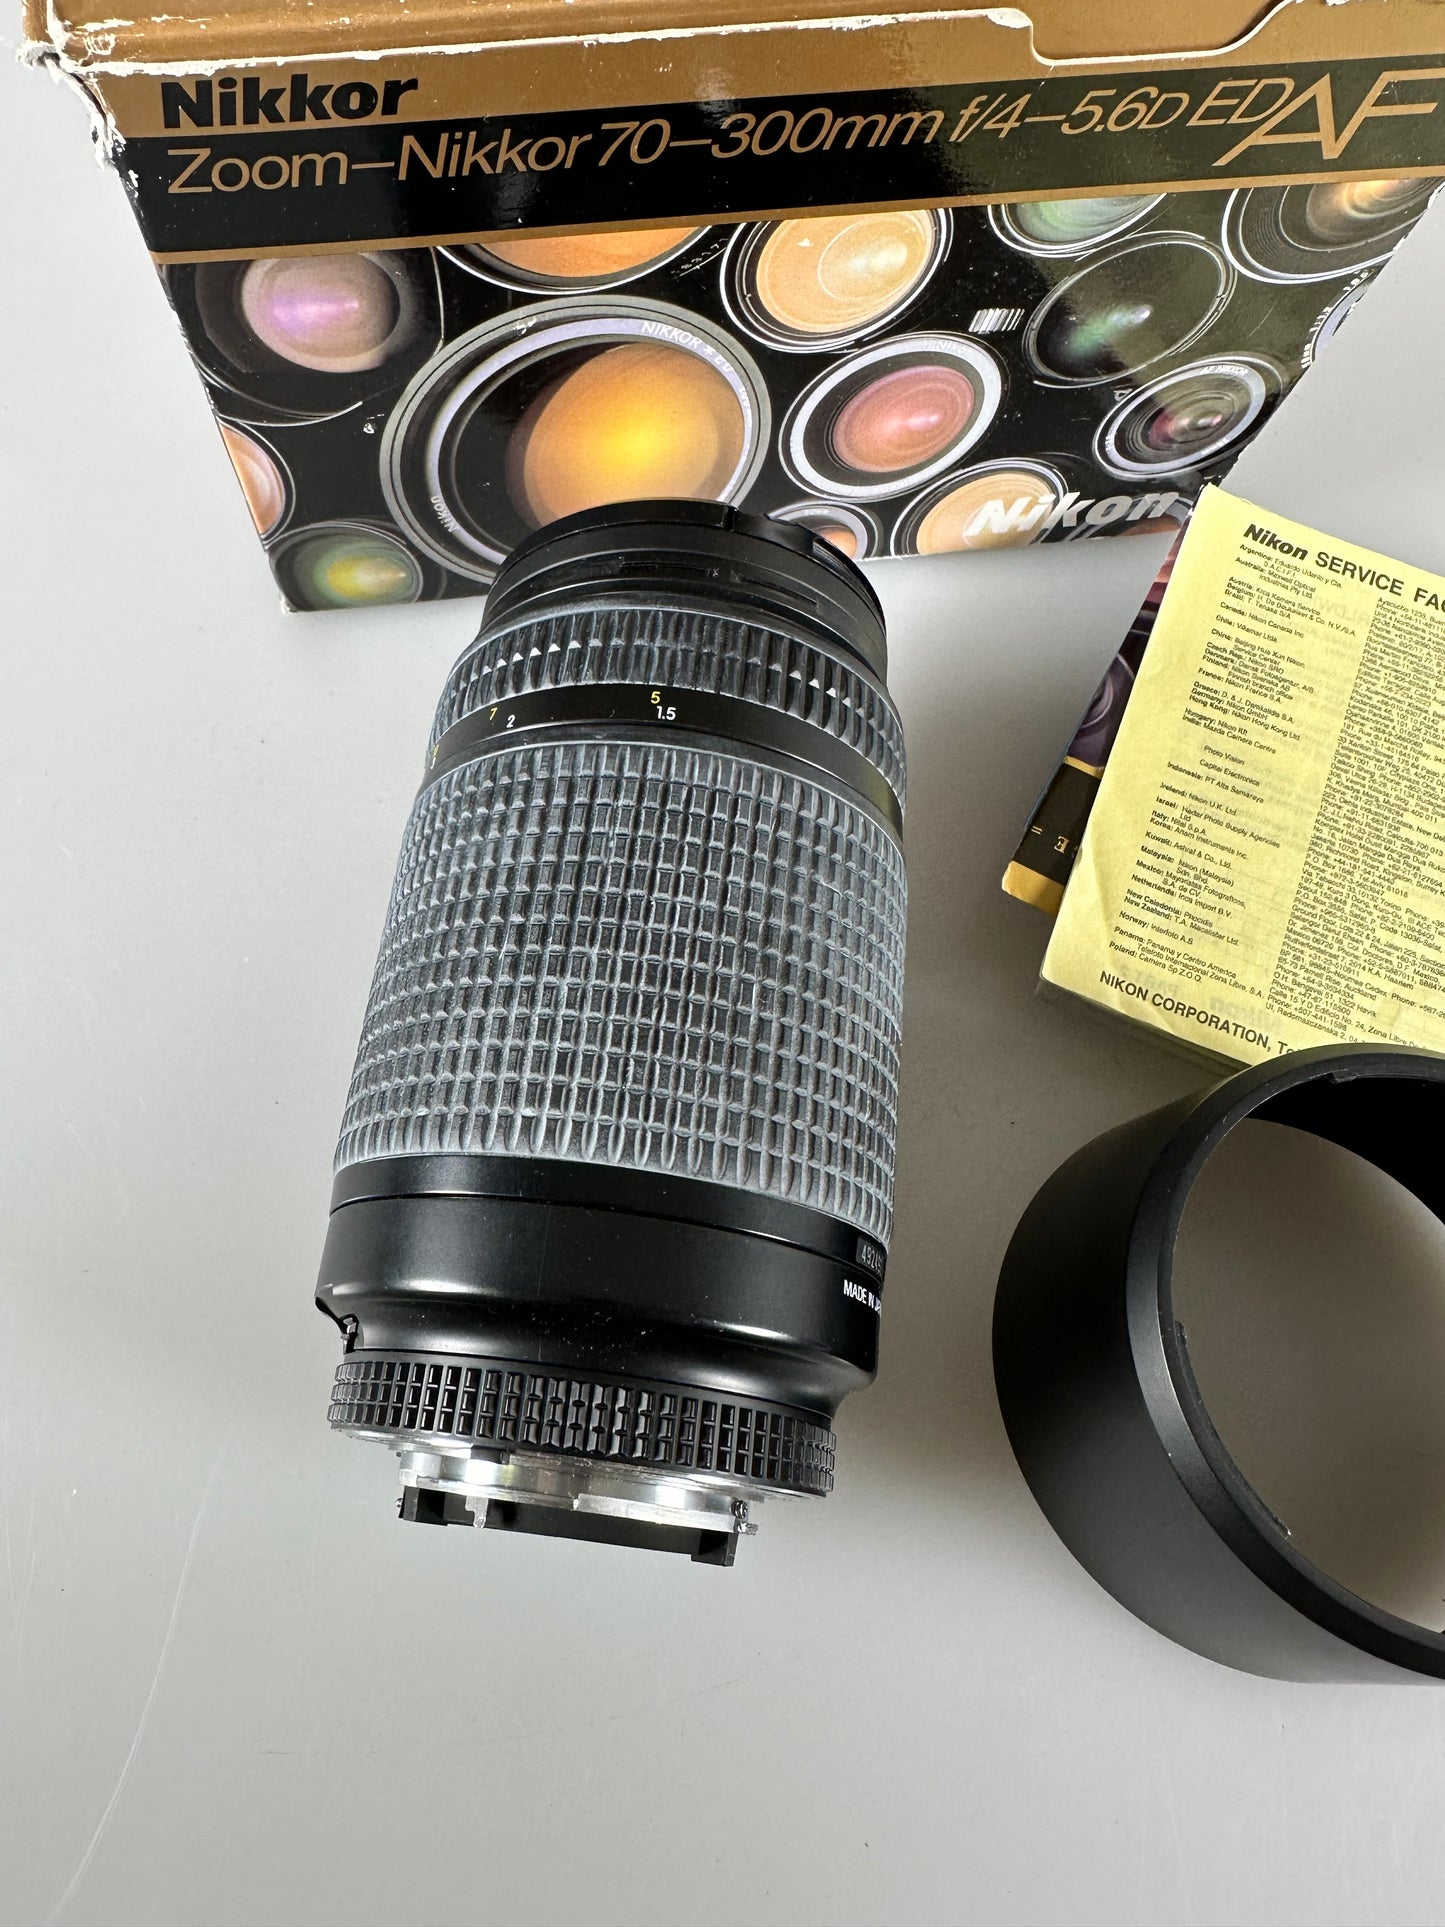 Nikon AF 70-300mm f4-5.6 D ED Lens